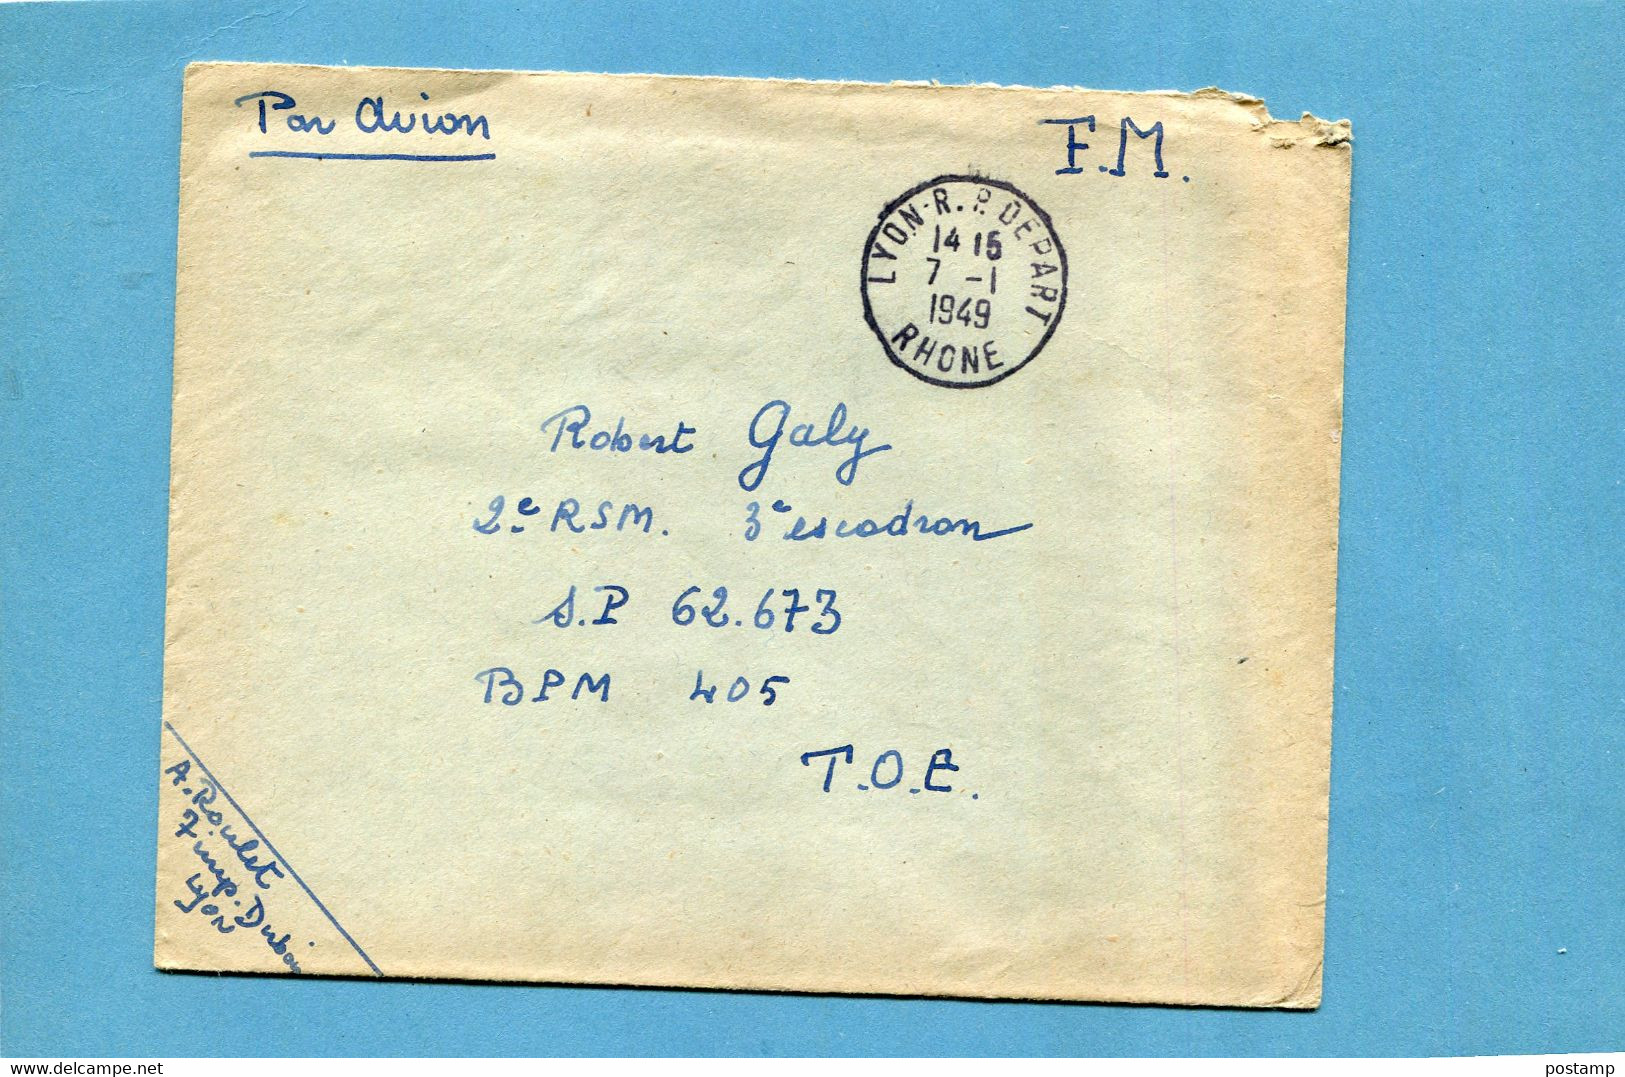 Marcophilie-guerre -indochine-Lettre En FM  Cad Lyon 1949 Pour T O E SP  62673 BPM 405 - Guerra D'Indocina/Vietnam